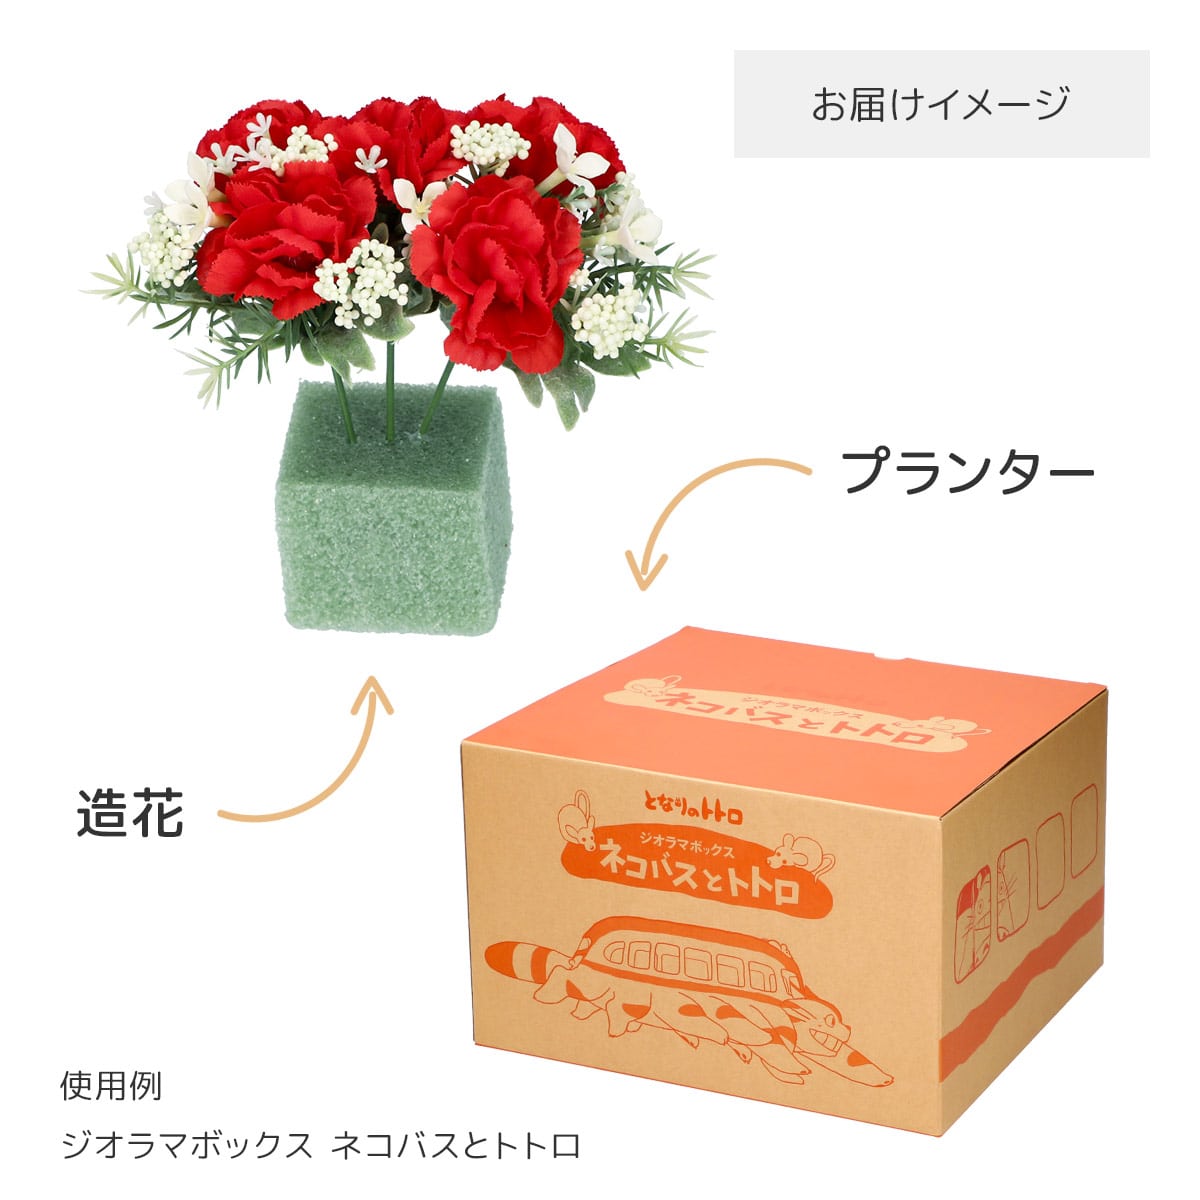 魔女の宅急便 ”ジジからの贈り物” と造花アレンジセット (カーネーションレッド)